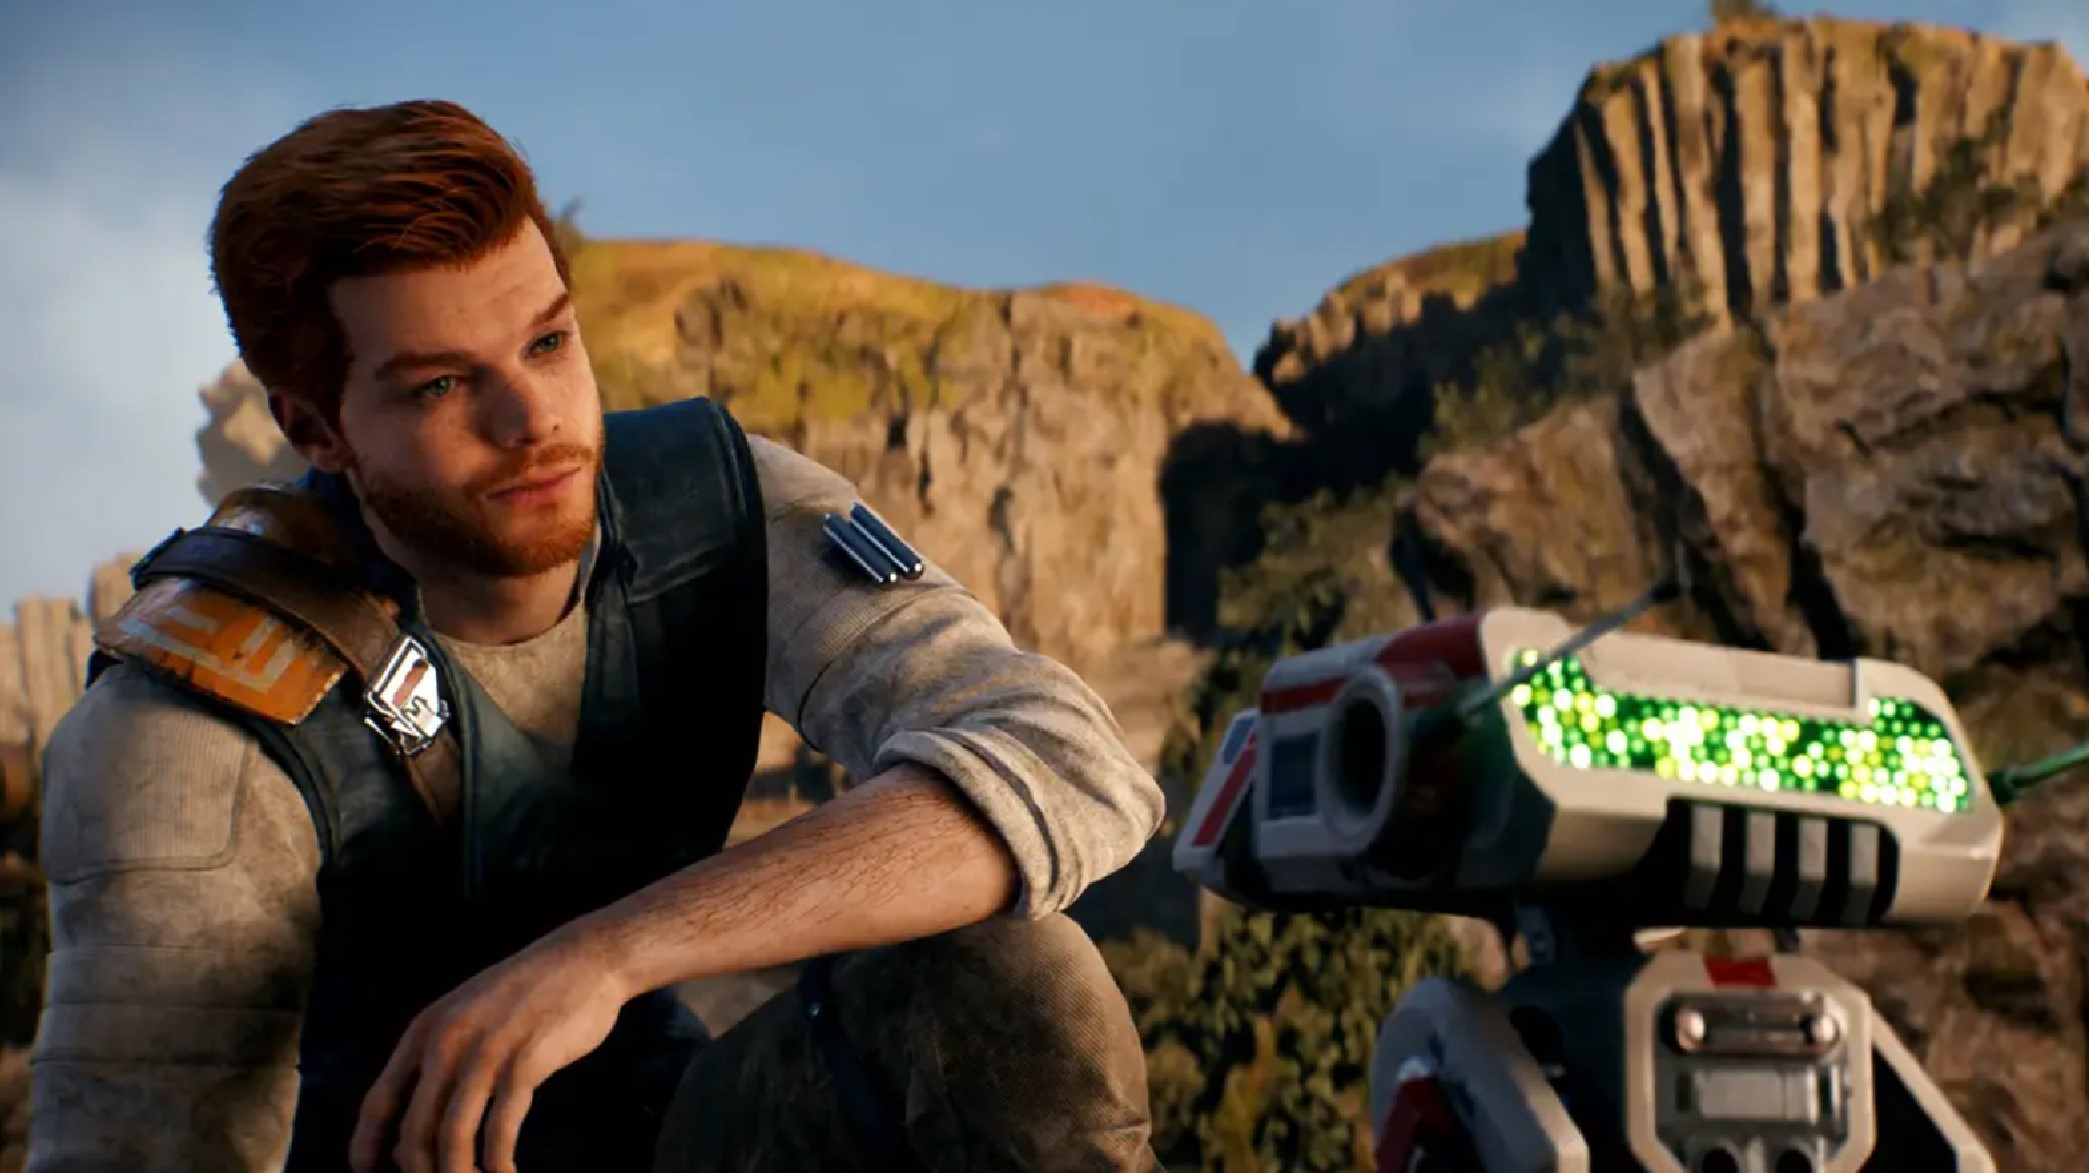 Jedi Survivor player finds workaround for broken HDR on PS5 & Xbox